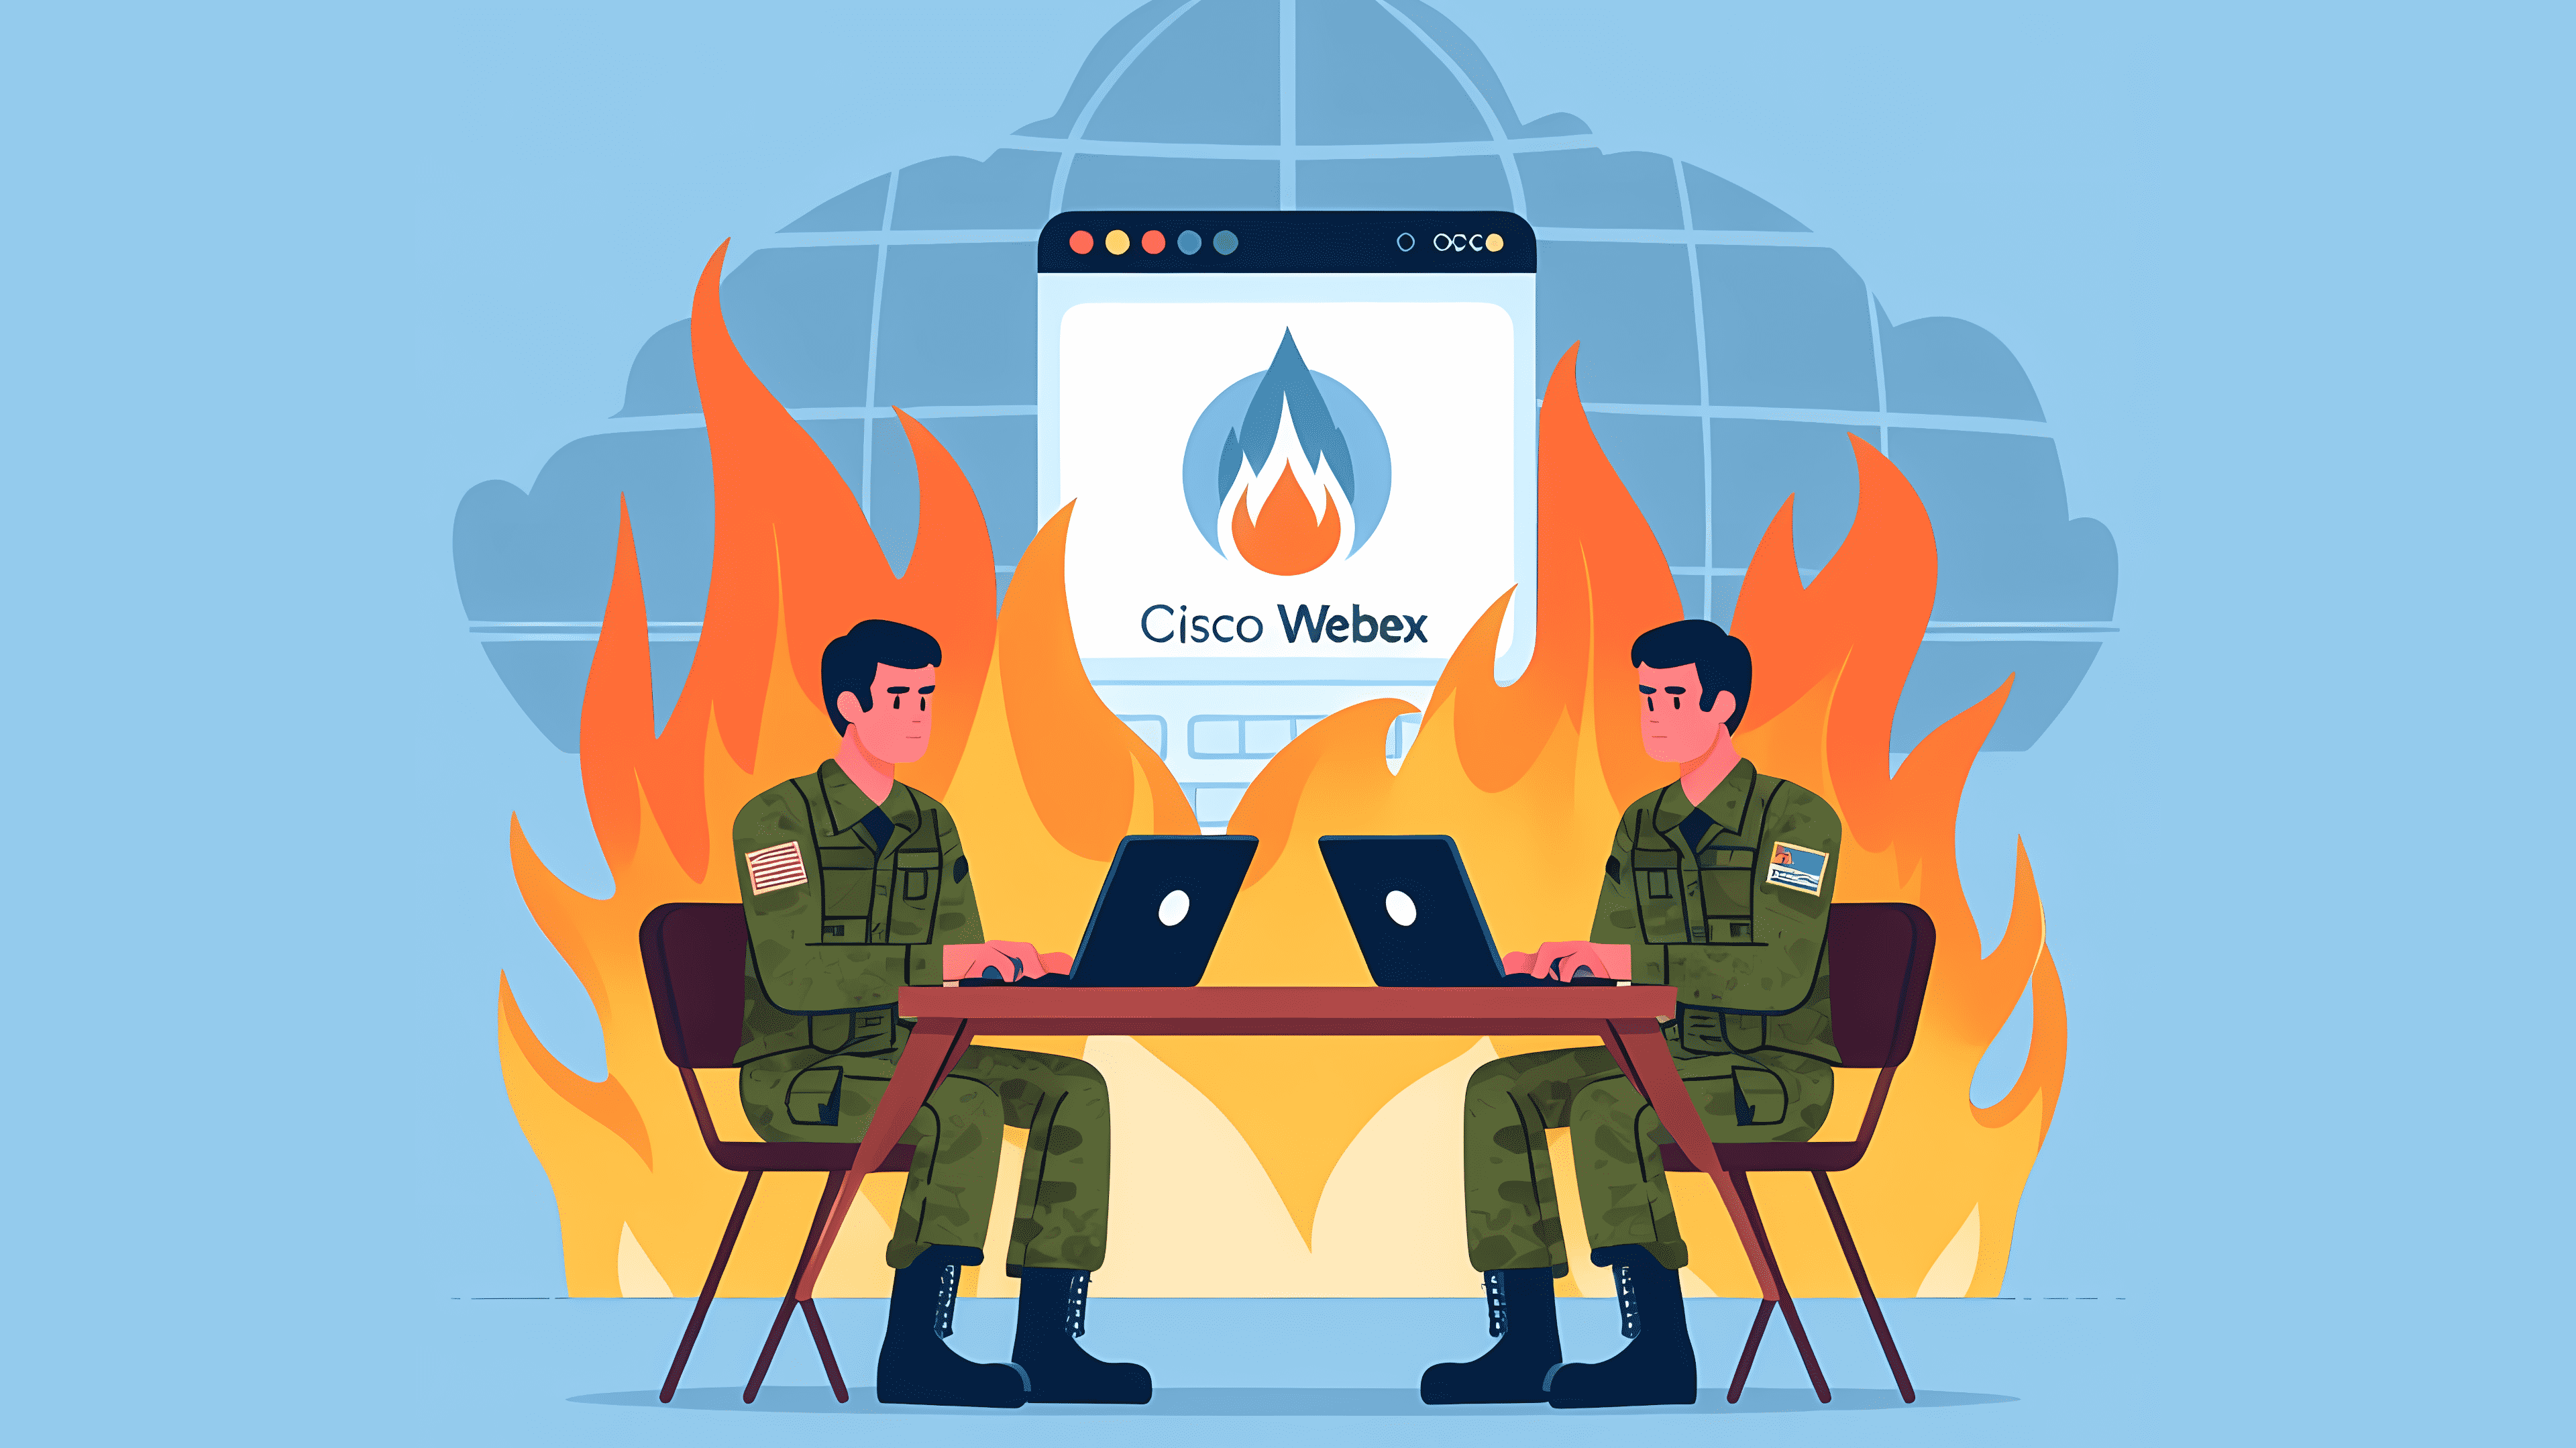 Stilisiertes Bild: Zwei Soldaten halten eine Webkonferenz ab. Im Hintergrund steht "Cisco Webex"